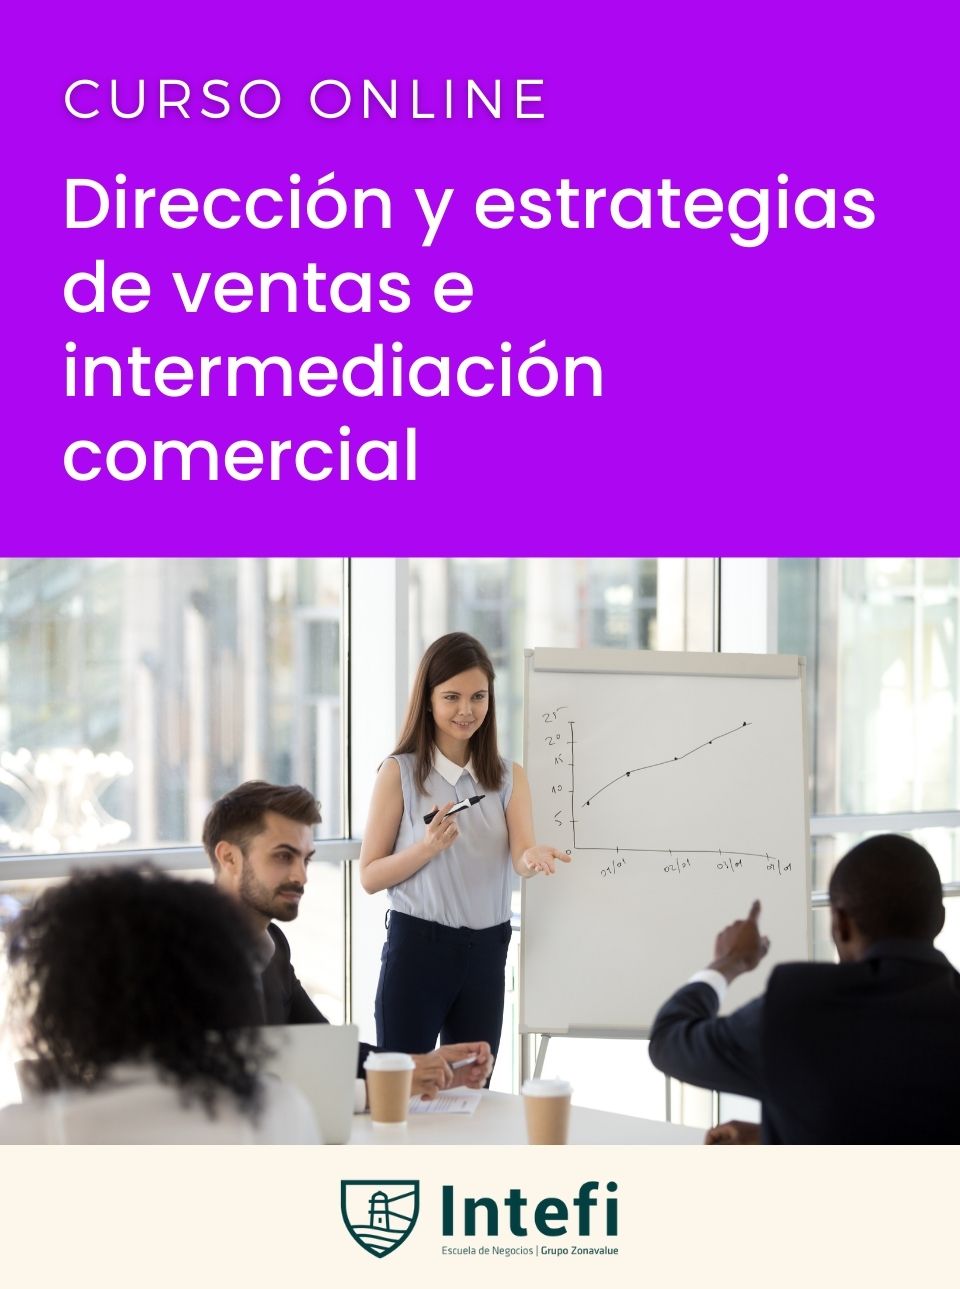 Curso de dirección y estrategias de ventas e intermediación comercial Intefi